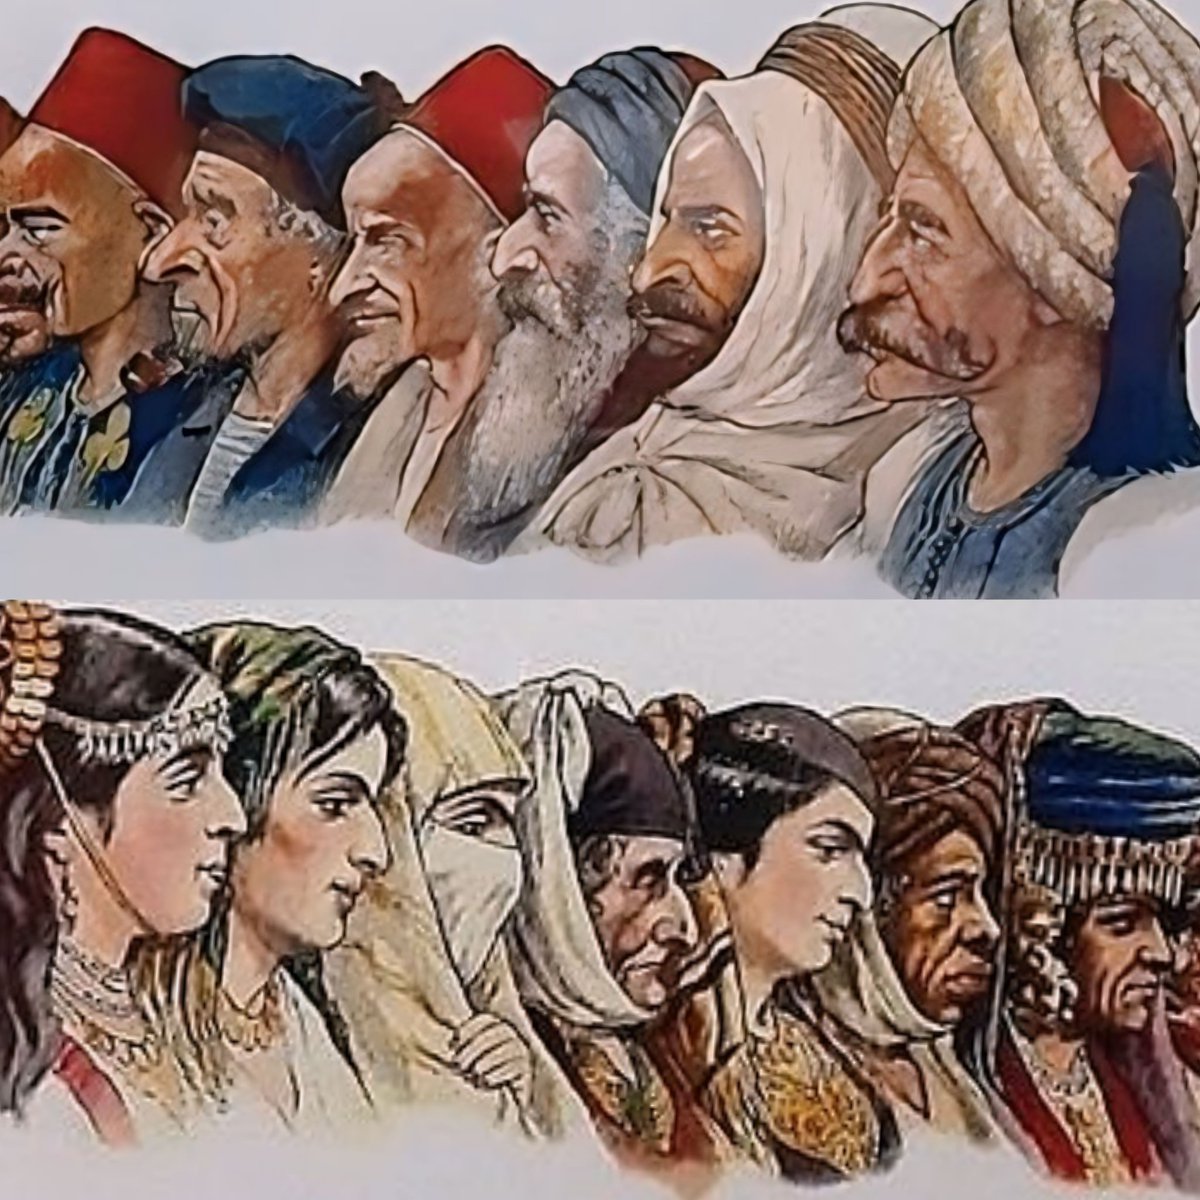 رسومات ألبسة الجزائريين لـ Salomon Assus الگاريكاتوري الفرنسي الذي ولد ومات في الجزائر العاصمة 1850-1919م.

#استرجع_تراثك  #فلسفتتا  #عمادالدين_زناف